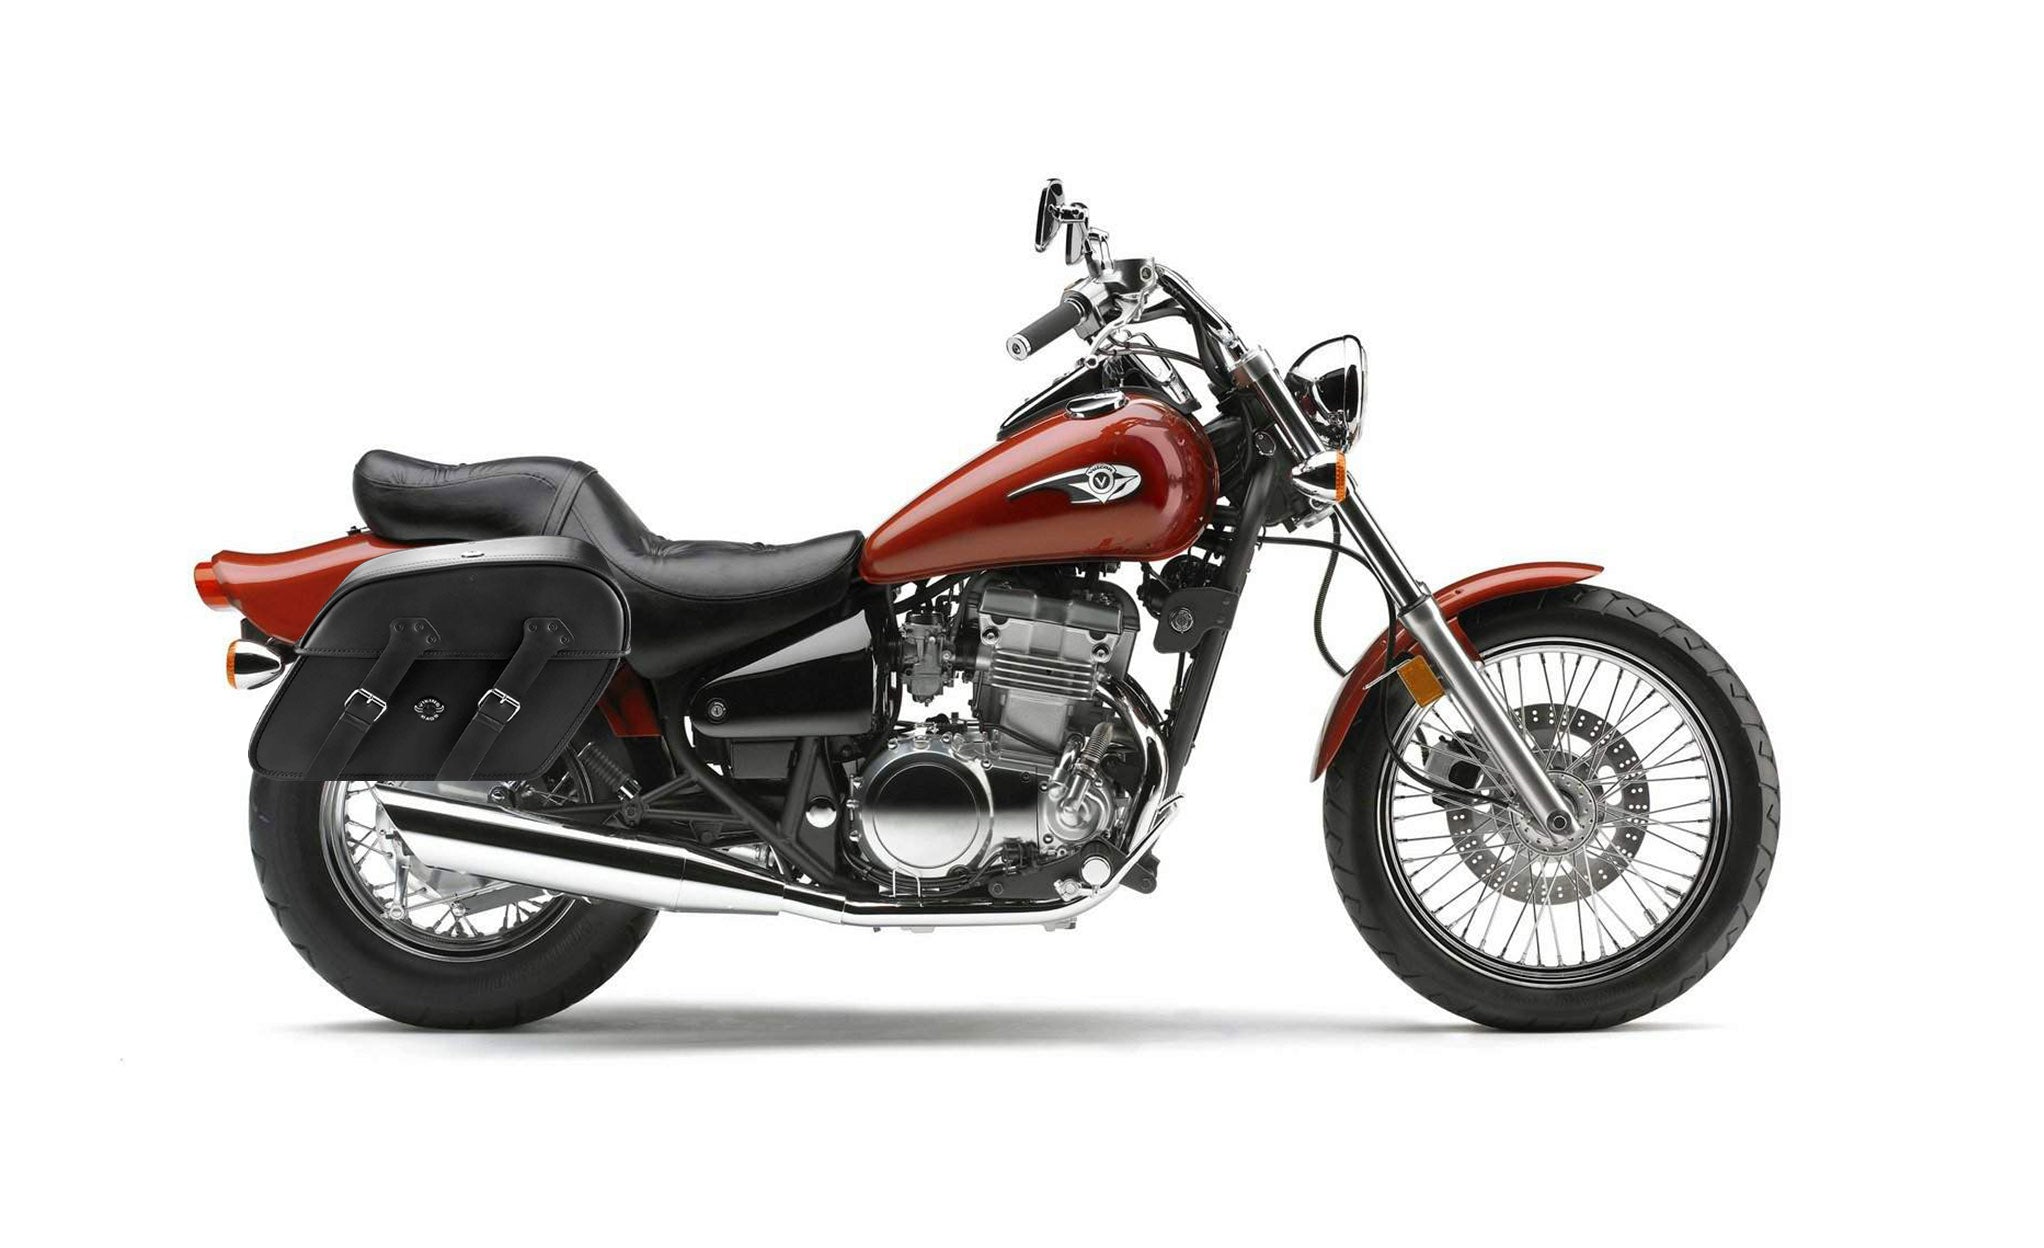 Viking Raven Extra Large Kawasaki Vulcan 500 En500 Shock Cut Out Leather Motorcycle Saddlebags on Bike Photo @expand